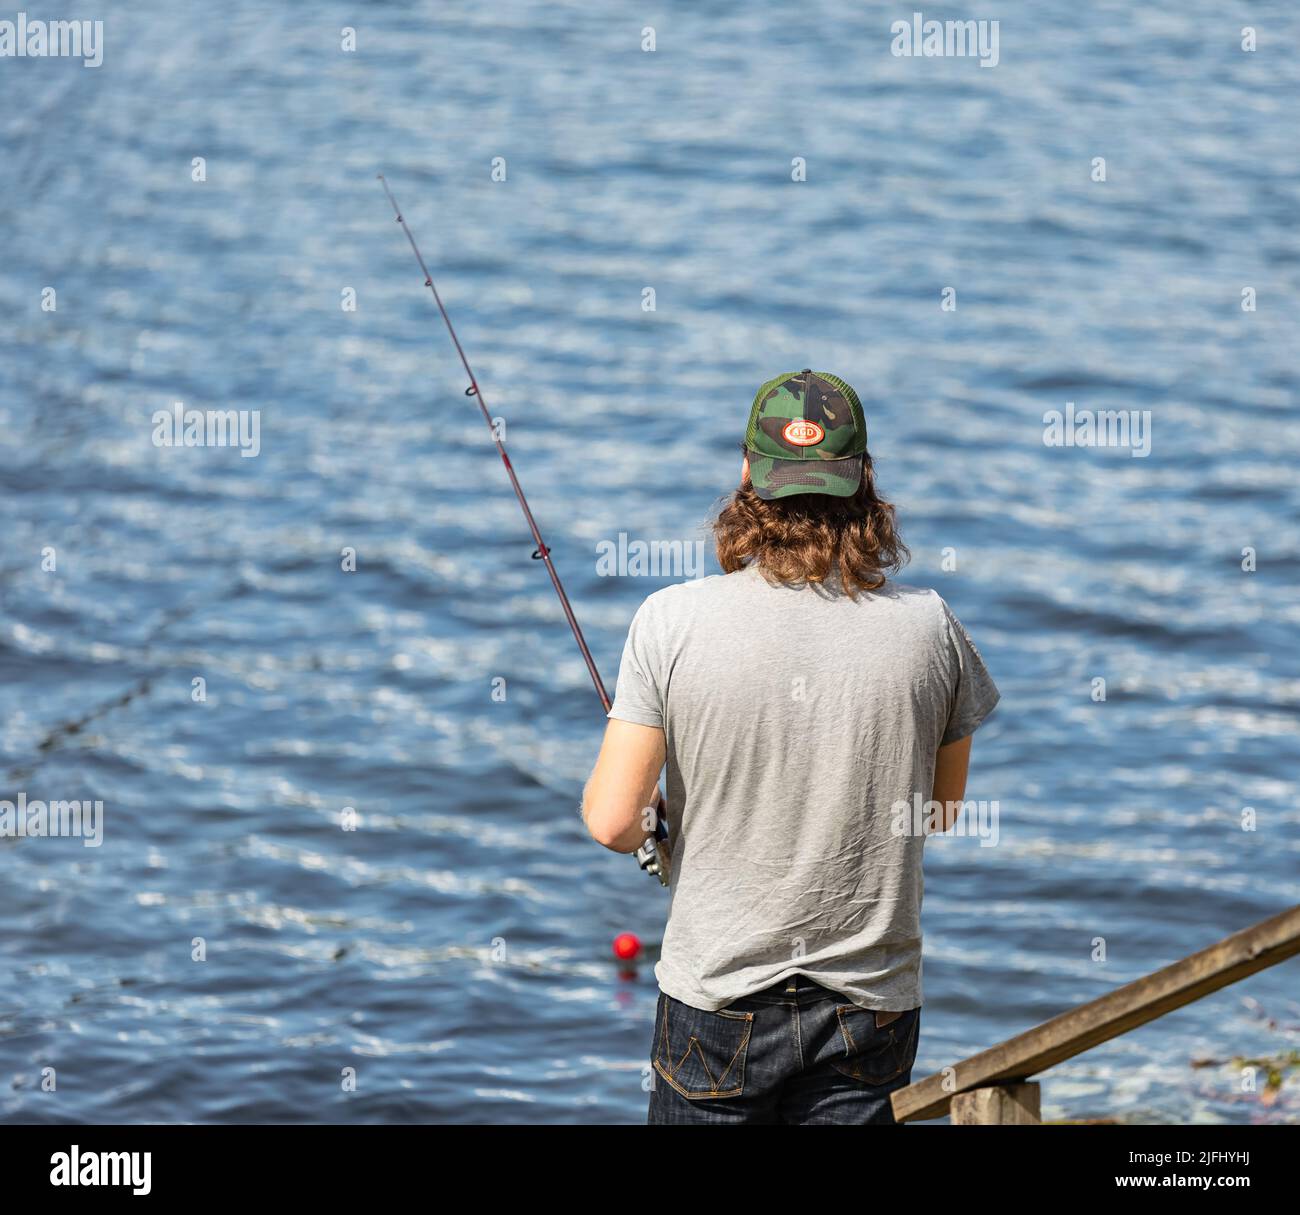 Pêche à la mouche dans un lac Pitt en Colombie-Britannique, Canada. Pêcheur utilisant la pêche à la mouche dans la rivière en été. Photo de voyage, mise au point sélective, copie Banque D'Images